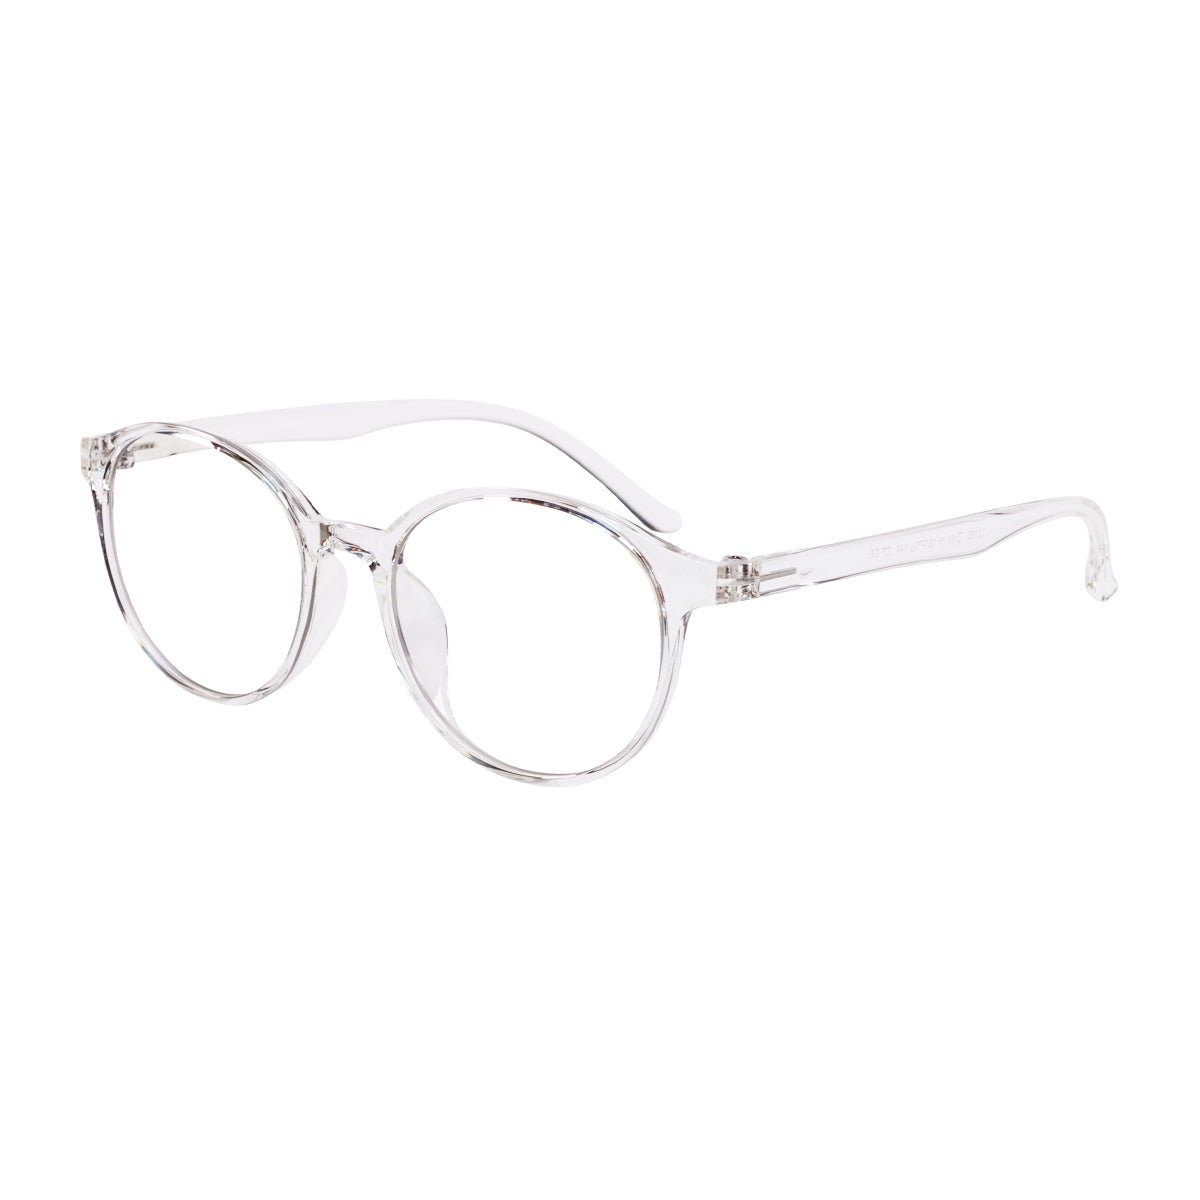 Epic Gamers Glasses V3 - Transparent White - Store 974 | ستور ٩٧٤